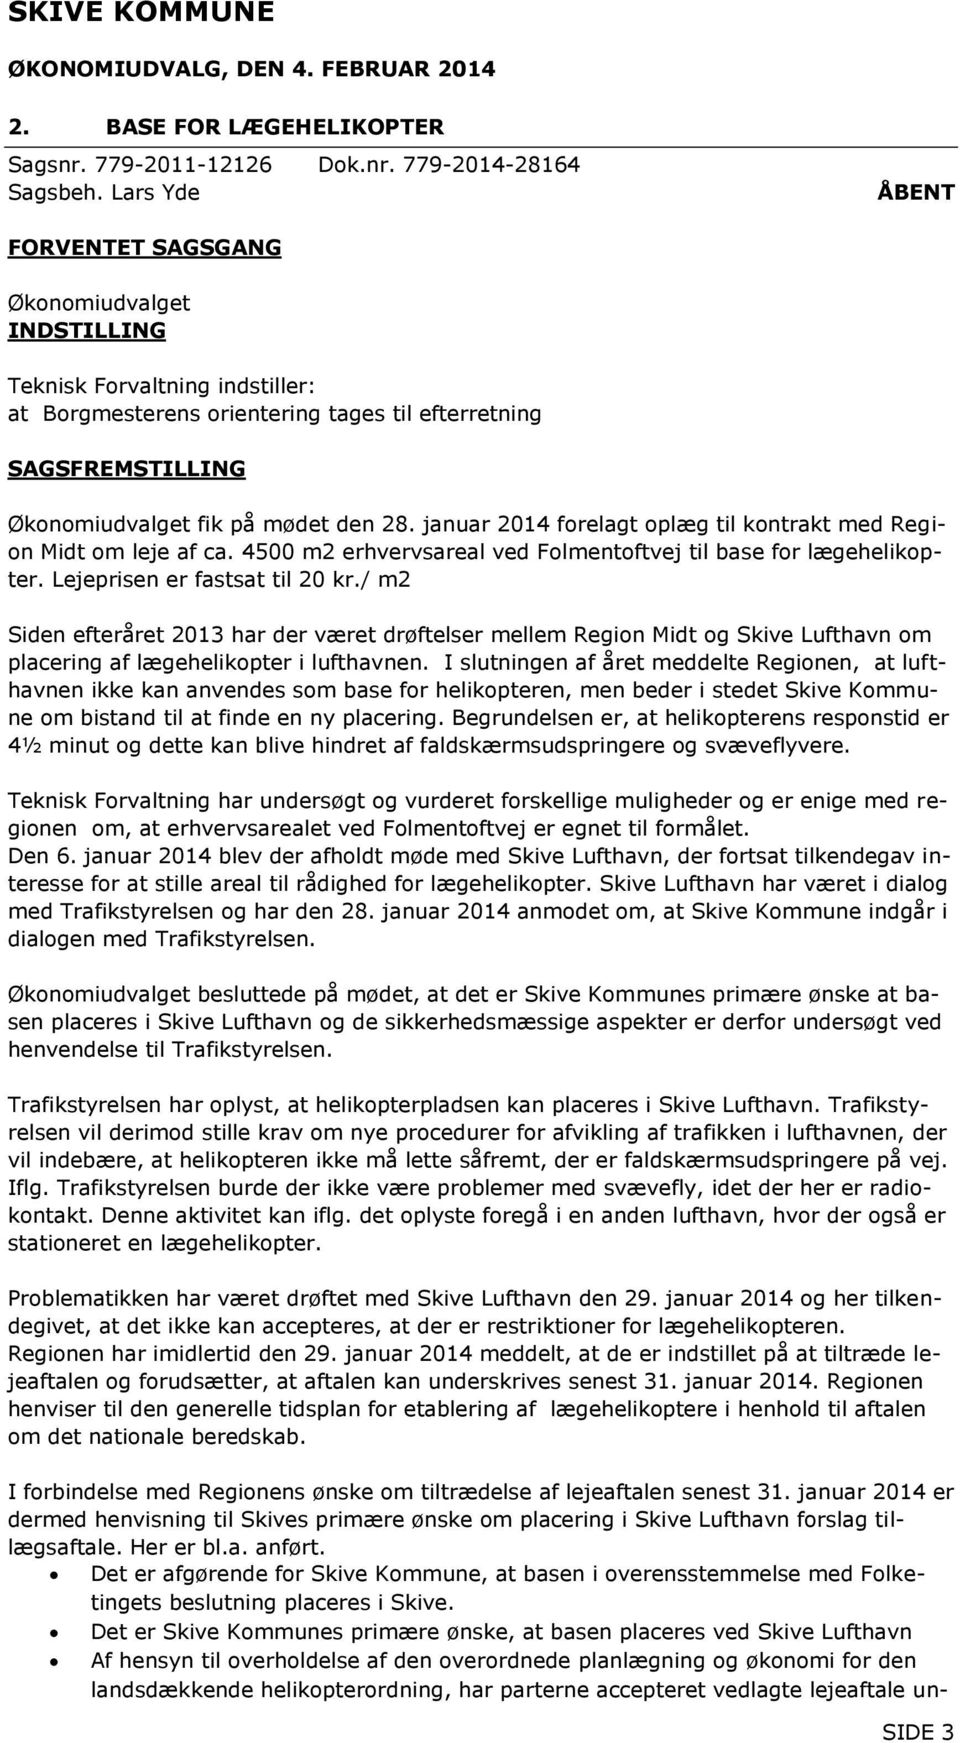 januar 2014 forelagt oplæg til kontrakt med Region Midt om leje af ca. 4500 m2 erhvervsareal ved Folmentoftvej til base for lægehelikopter. Lejeprisen er fastsat til 20 kr.